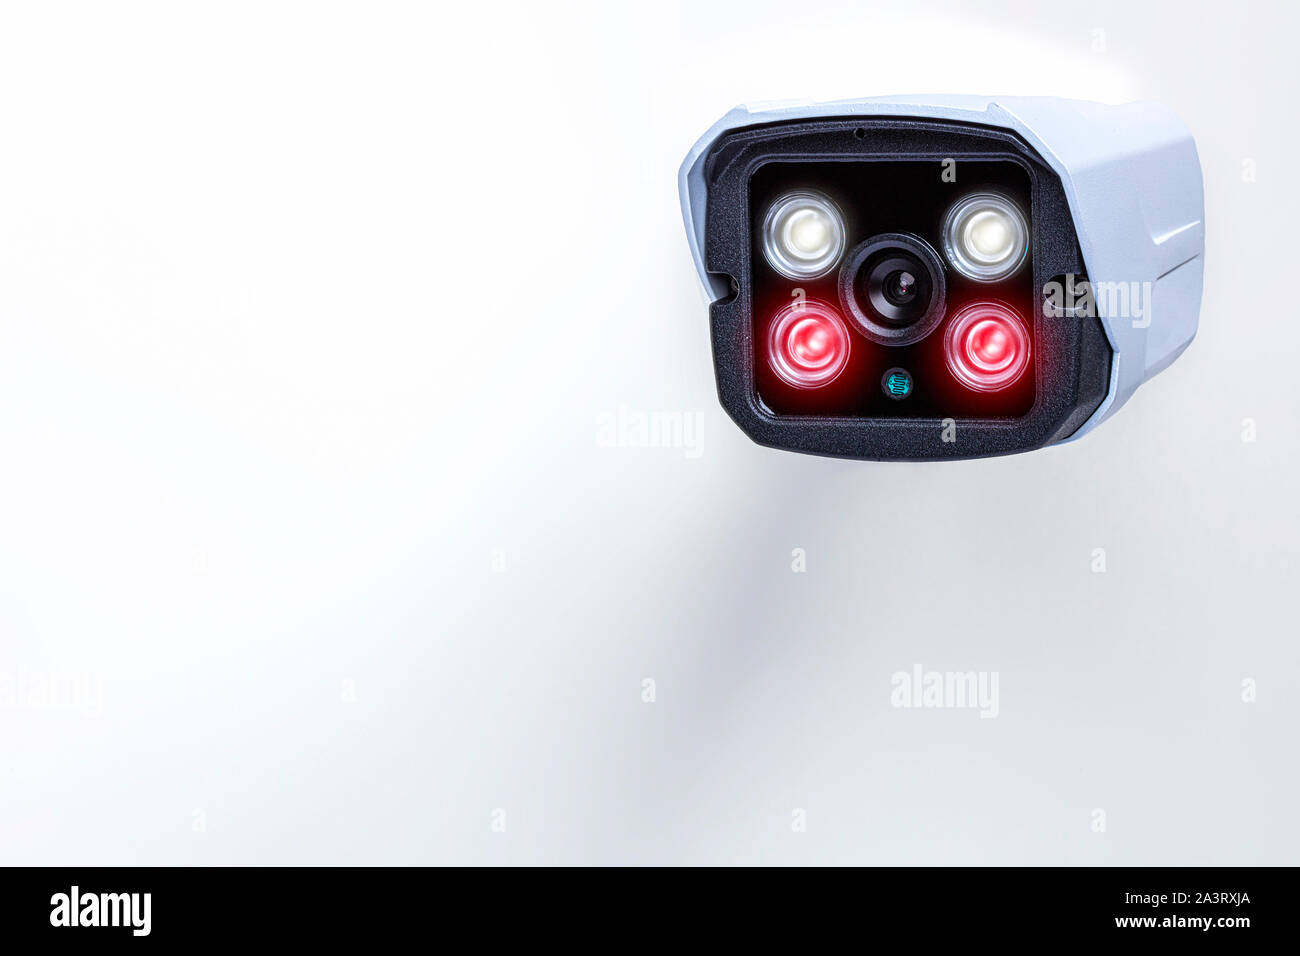 Détail d'une caméra de surveillance avec la technologie infrarouge pour la vision nocturne sur un fond blanc. Banque D'Images